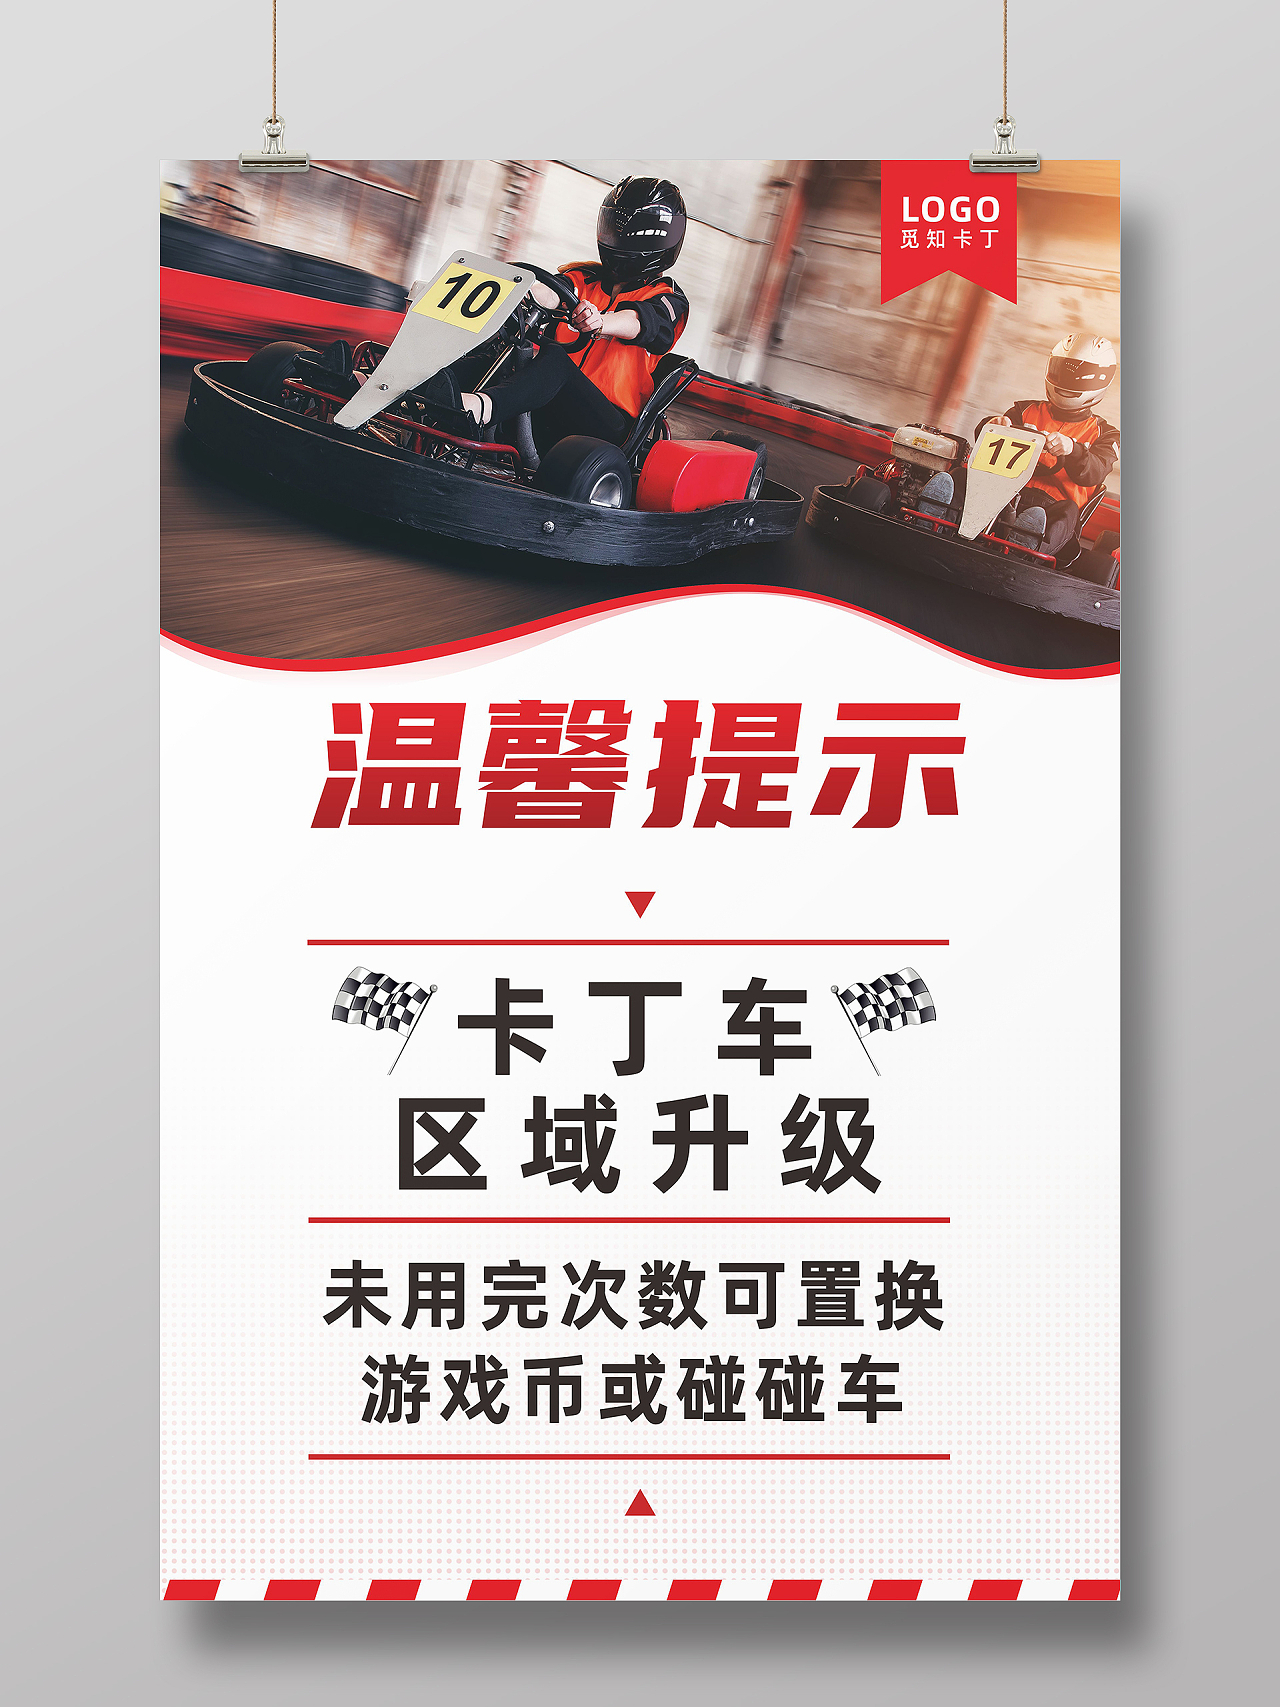 红色卡丁车赛车游戏区域升级温馨提示通知海报